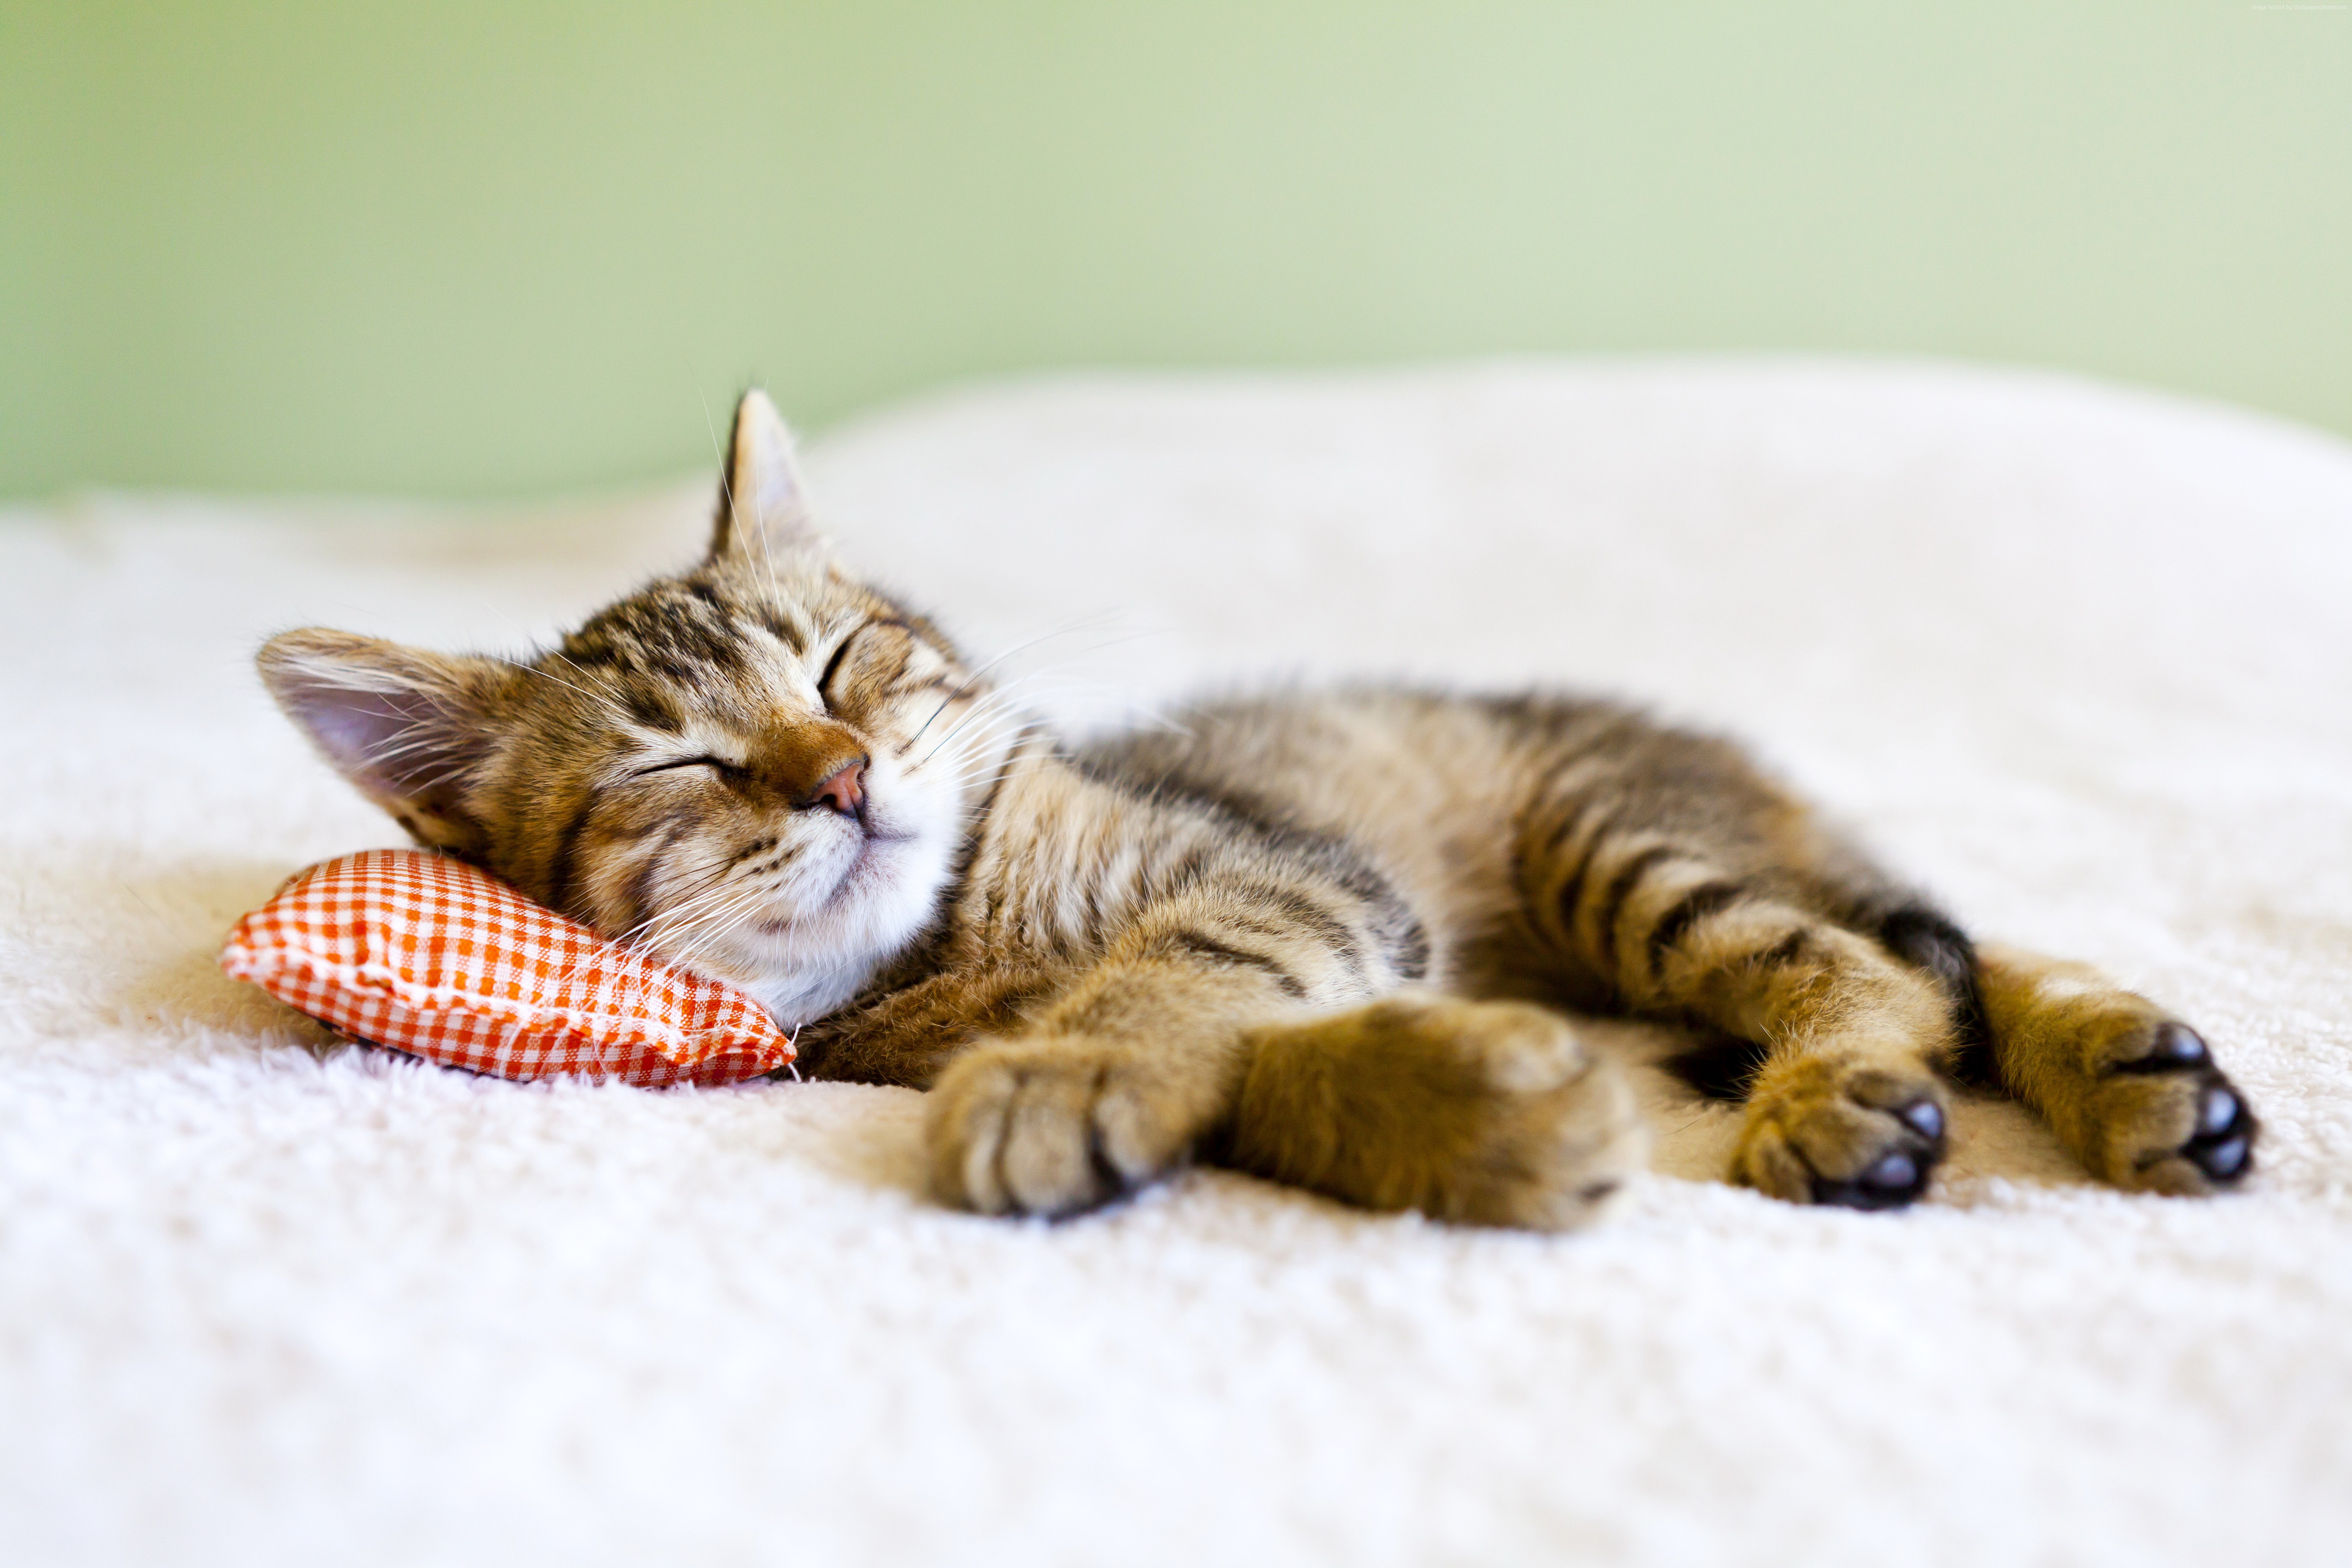 Спящий котик на подушечке